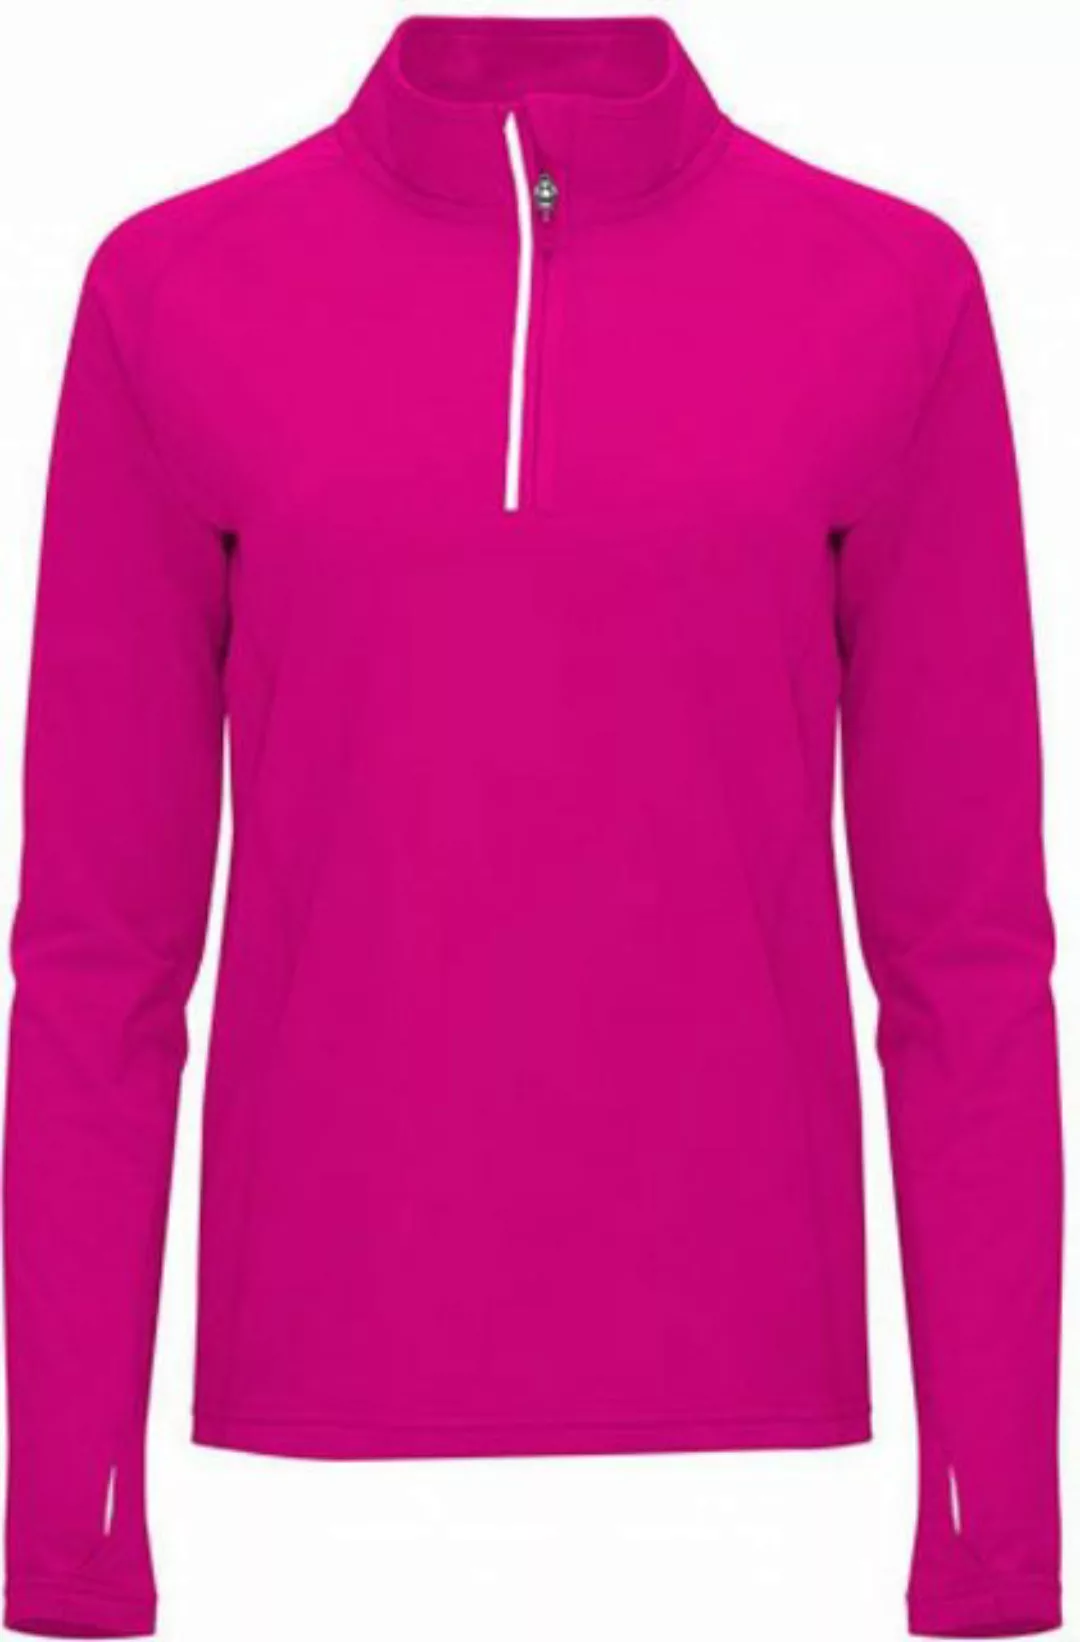 Roly Sweatshirt Women´s Melbourne Sweatshirt S bis XXL günstig online kaufen